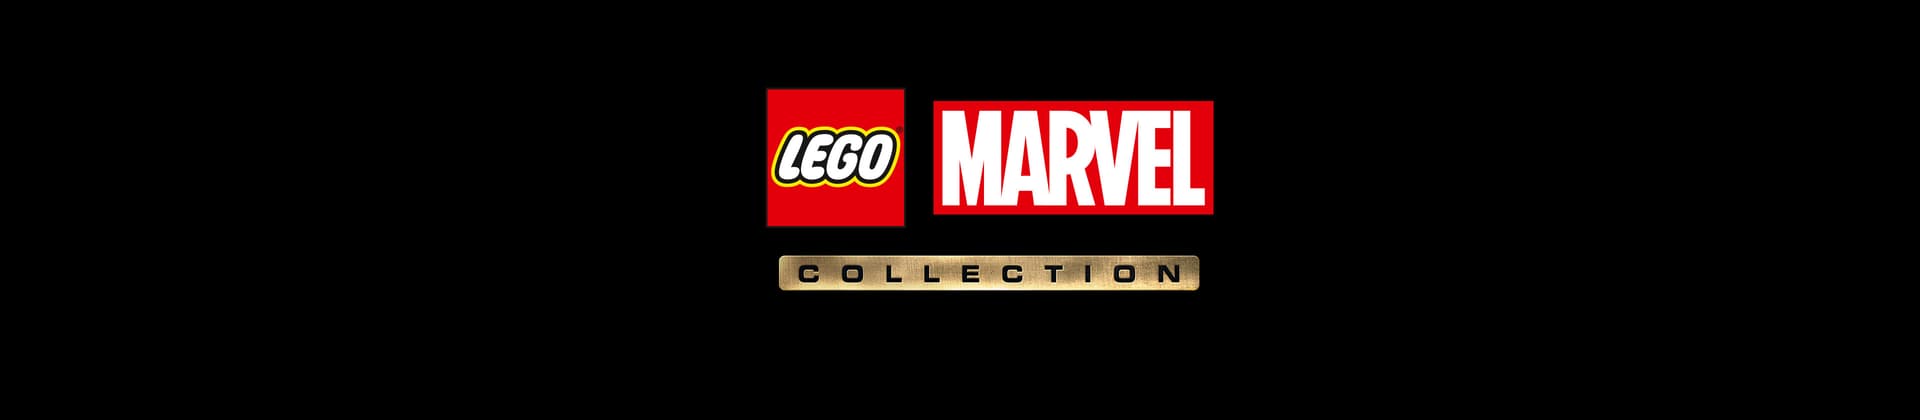 LEGO® Marvel Collection Bundle Games Logo On Black